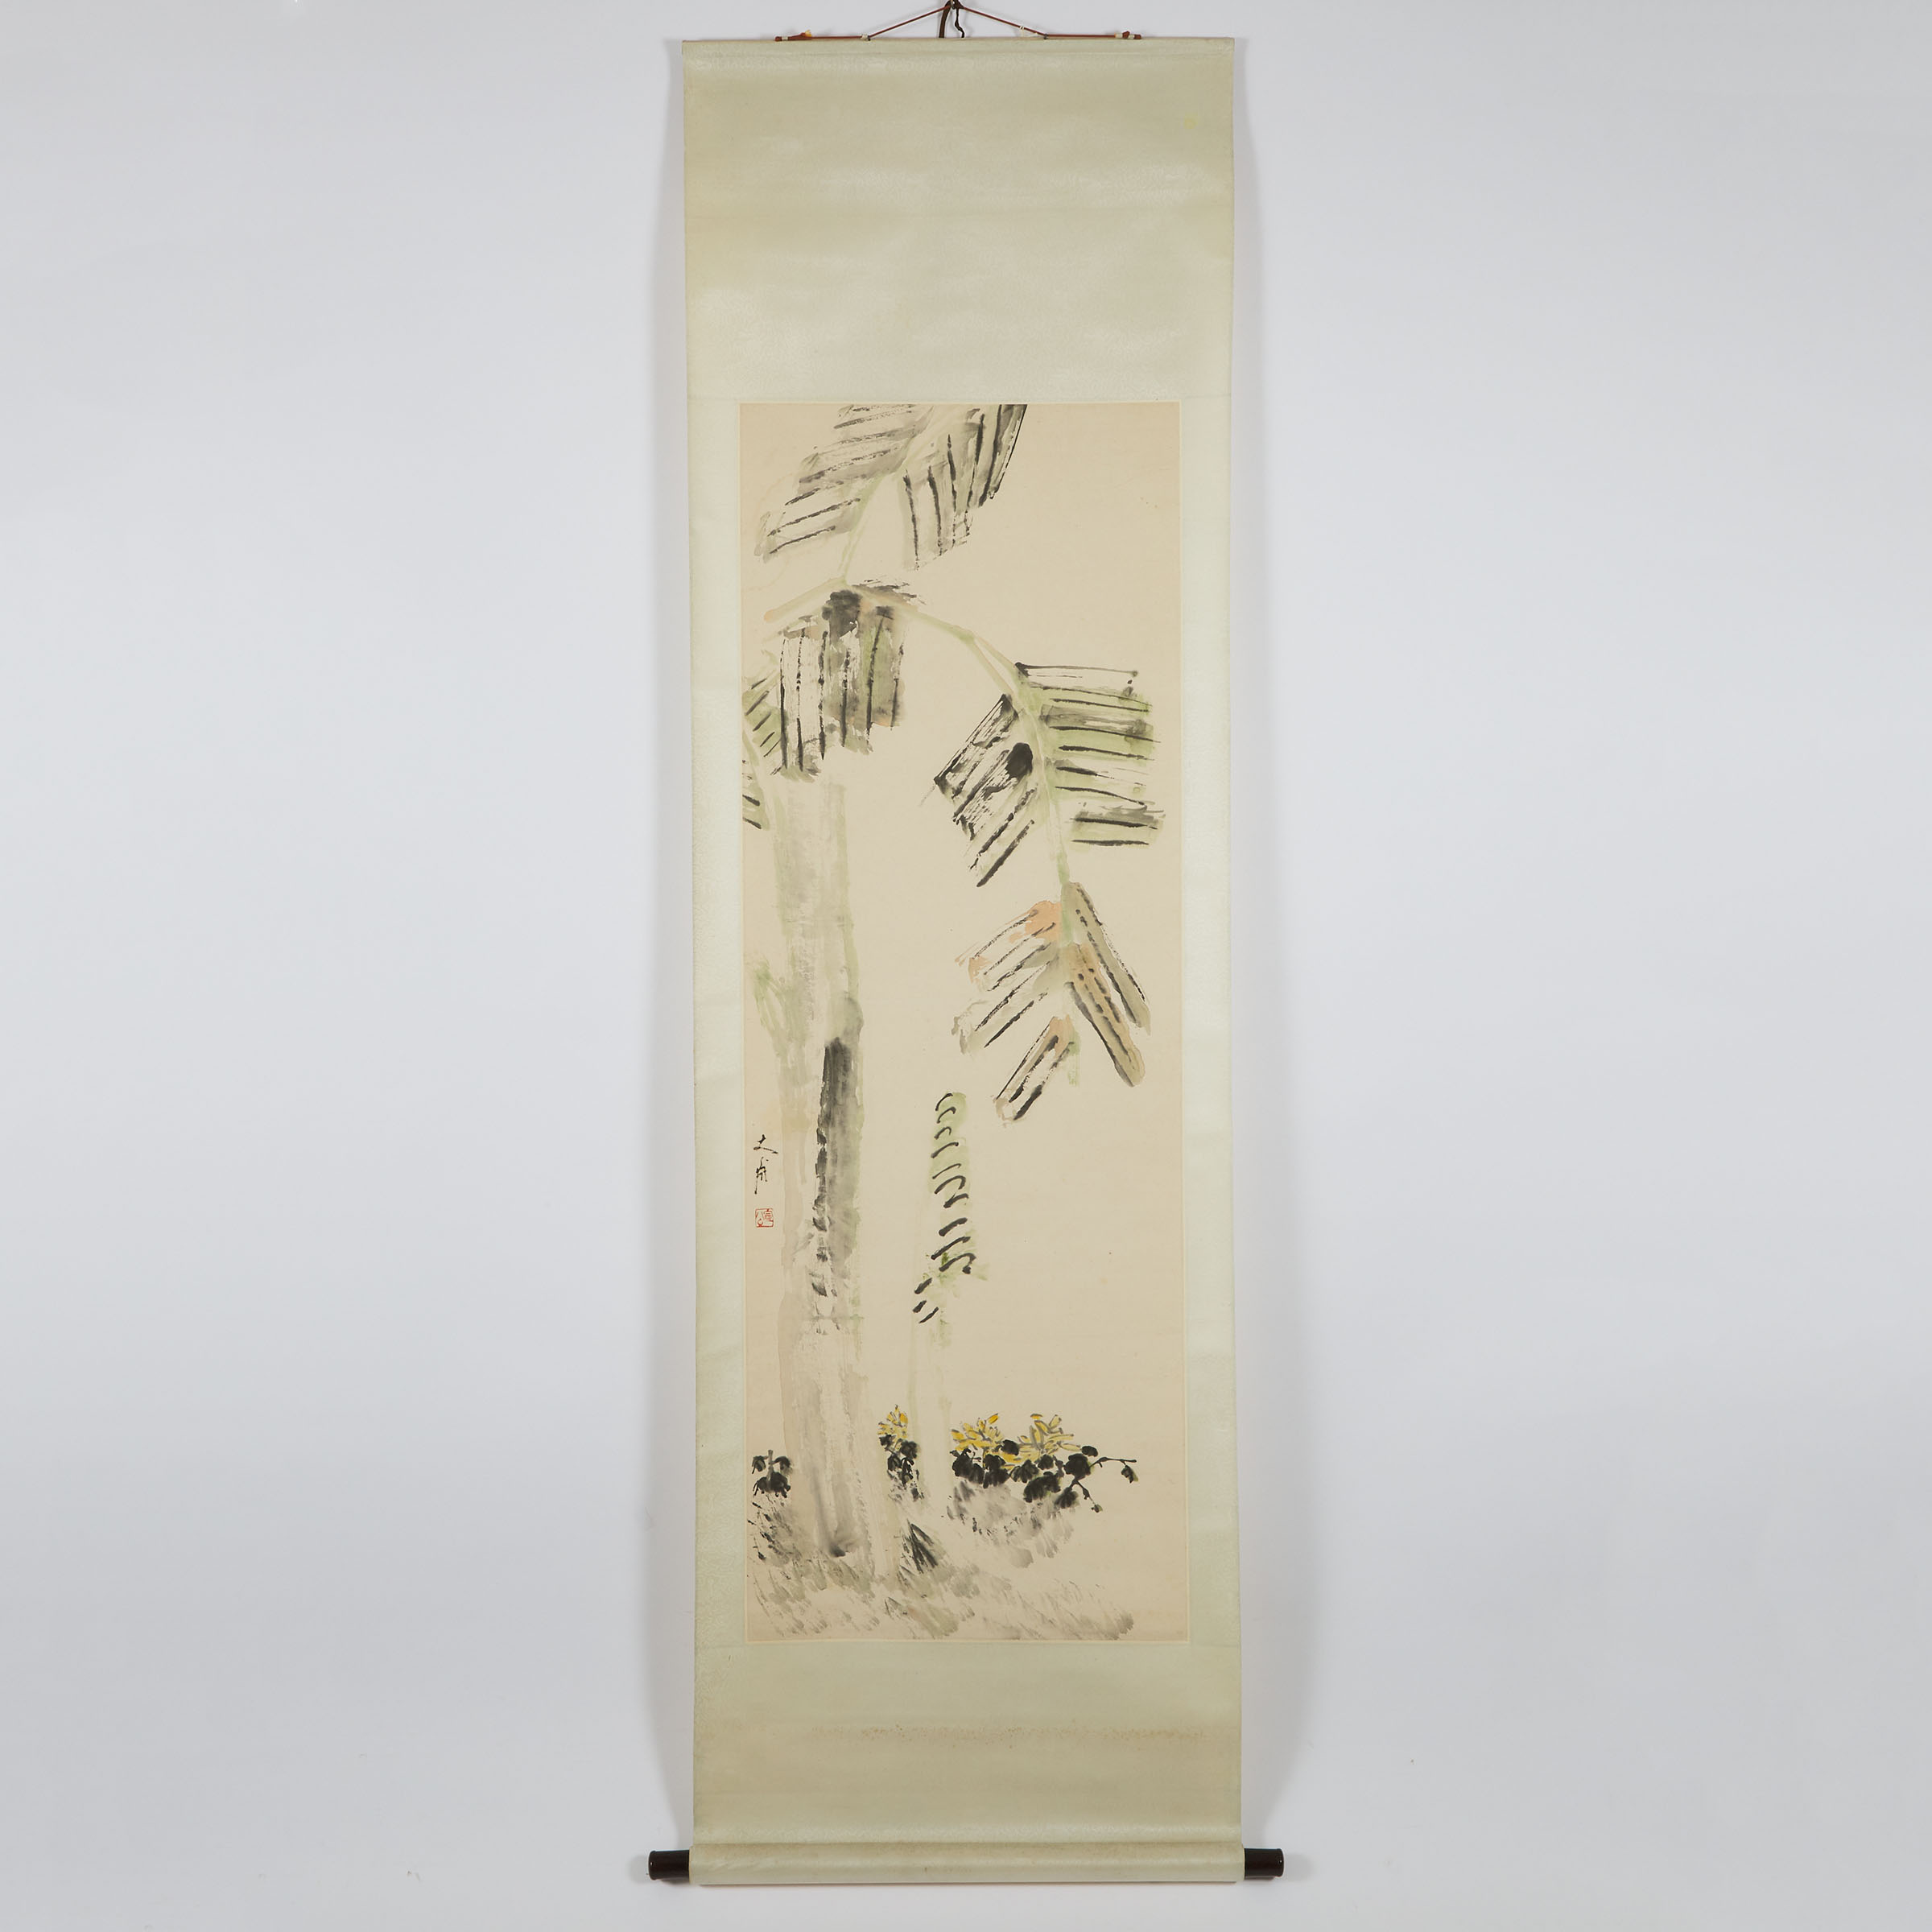 Ning Fucheng (1897-1966), Flowers